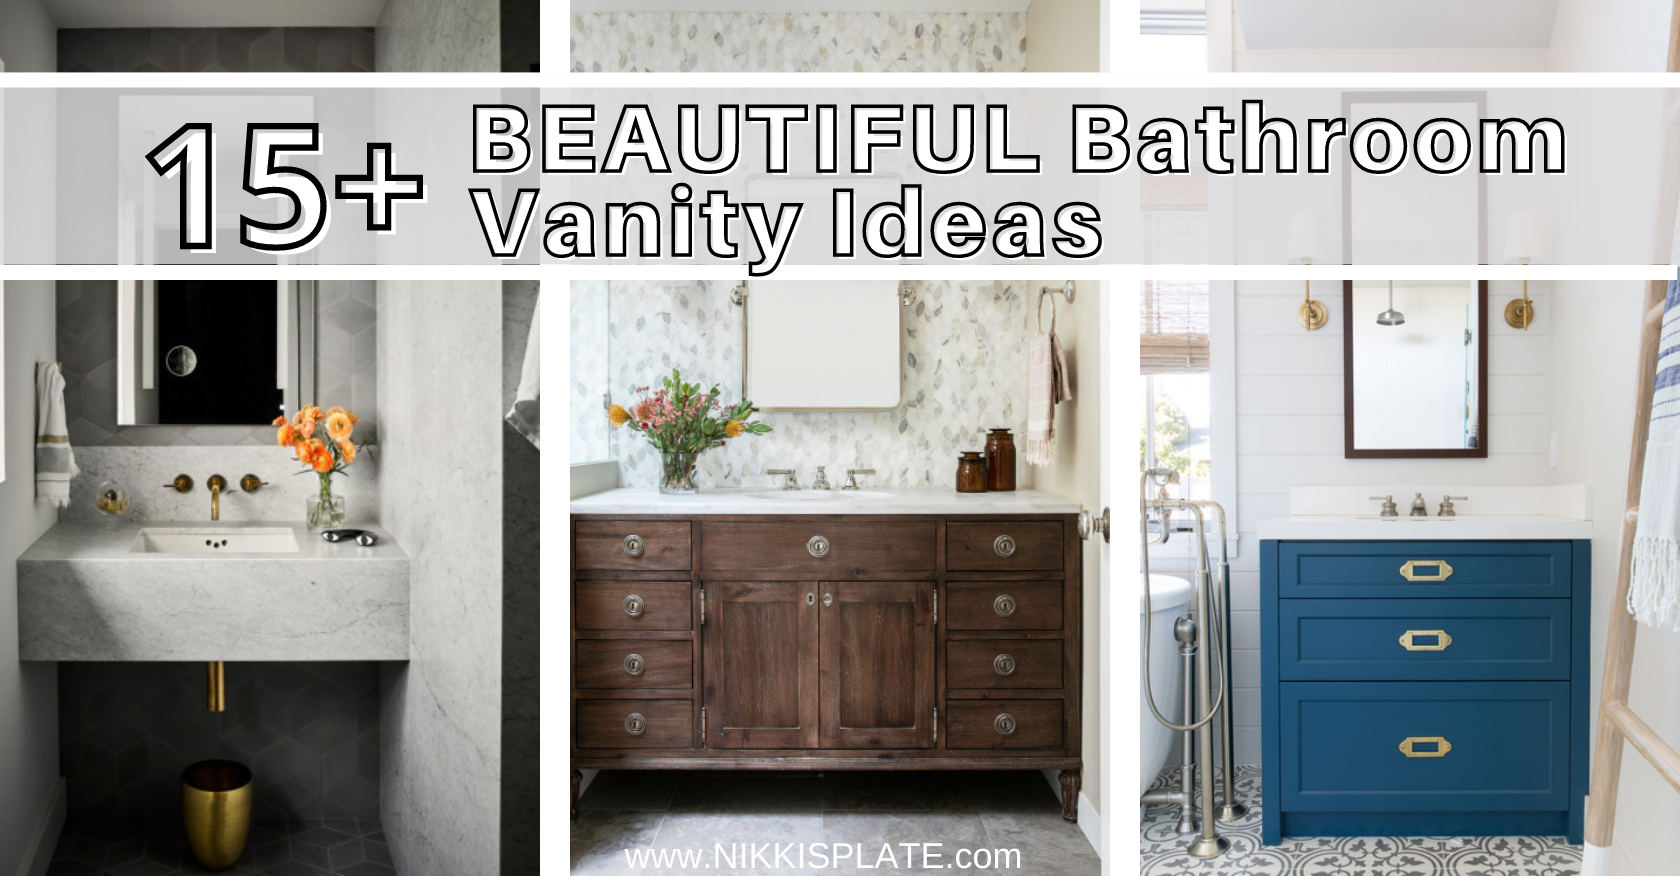 http://www.nikkisplate.com/wp-content/uploads/2022/07/Beautiful-Bathroom-Vanity-Ideas.png